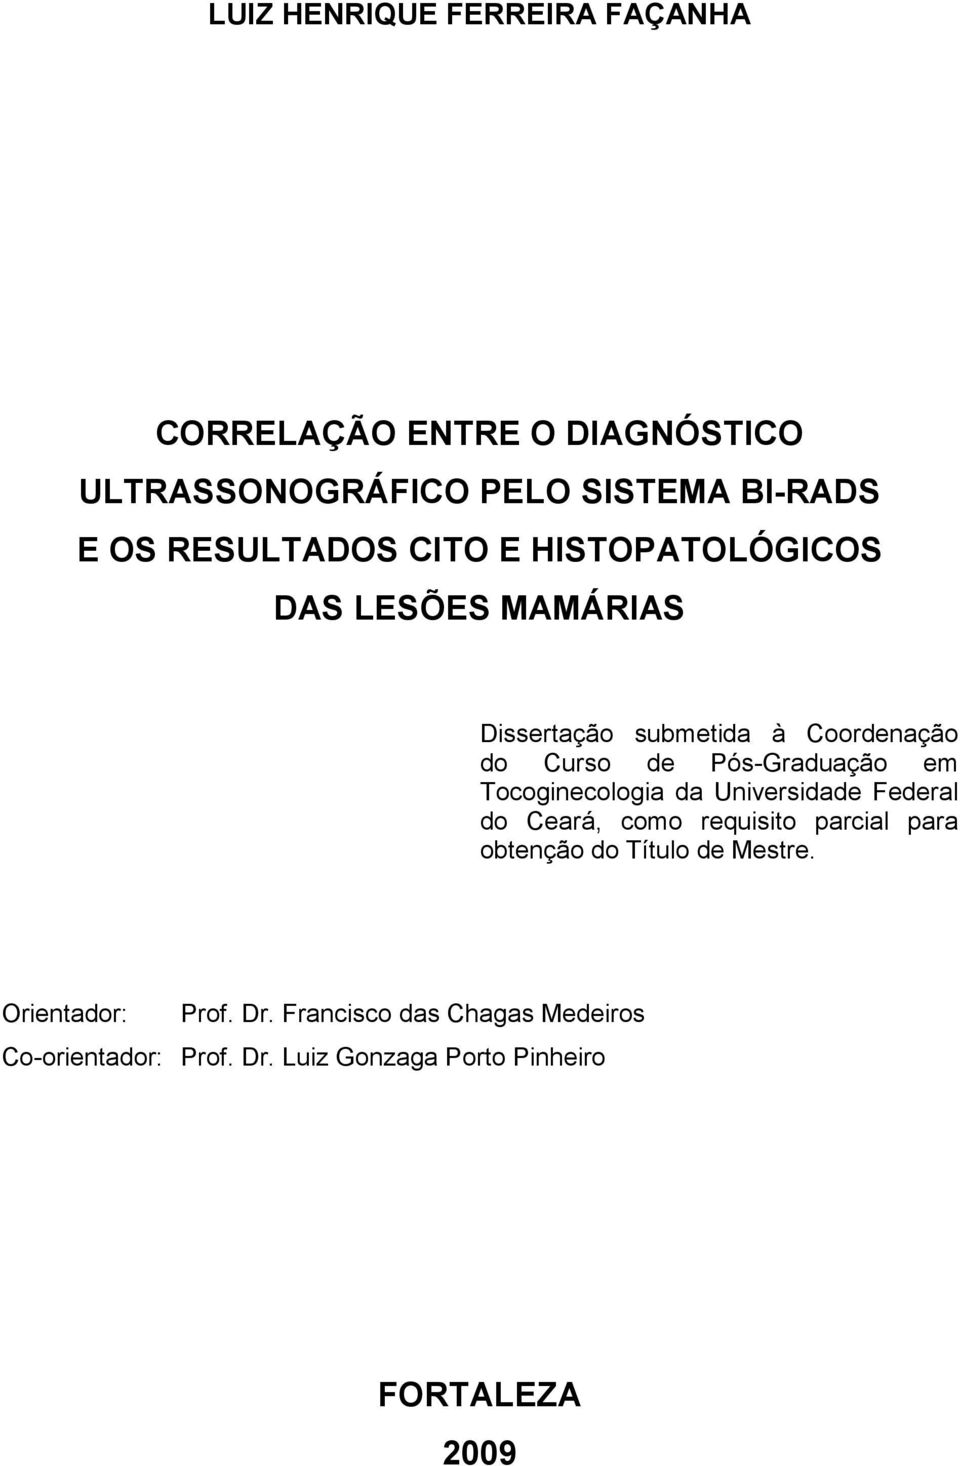 Pós-Graduação em Tocoginecologia da Universidade Federal do Ceará, como requisito parcial para obtenção do Título